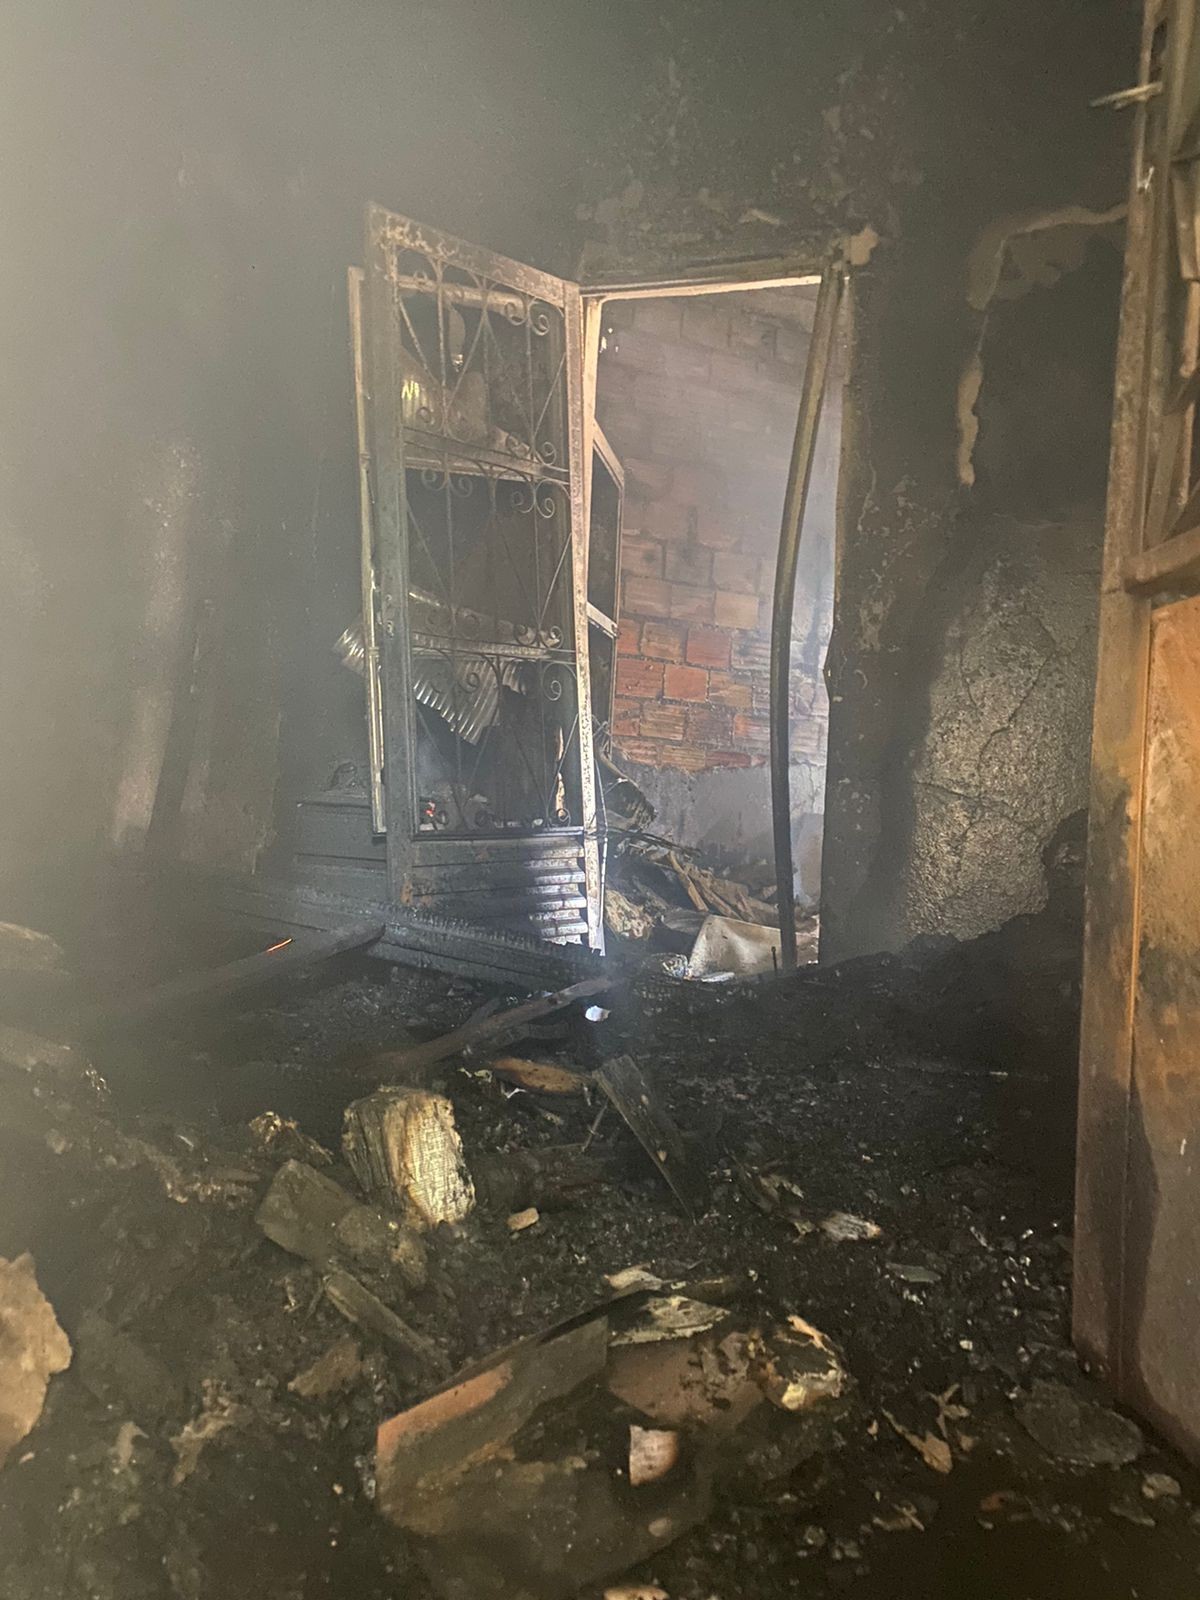 'Histórico de problemas': sobrinho é suspeito de colocar fogo na casa do tio em Belo Horizonte 